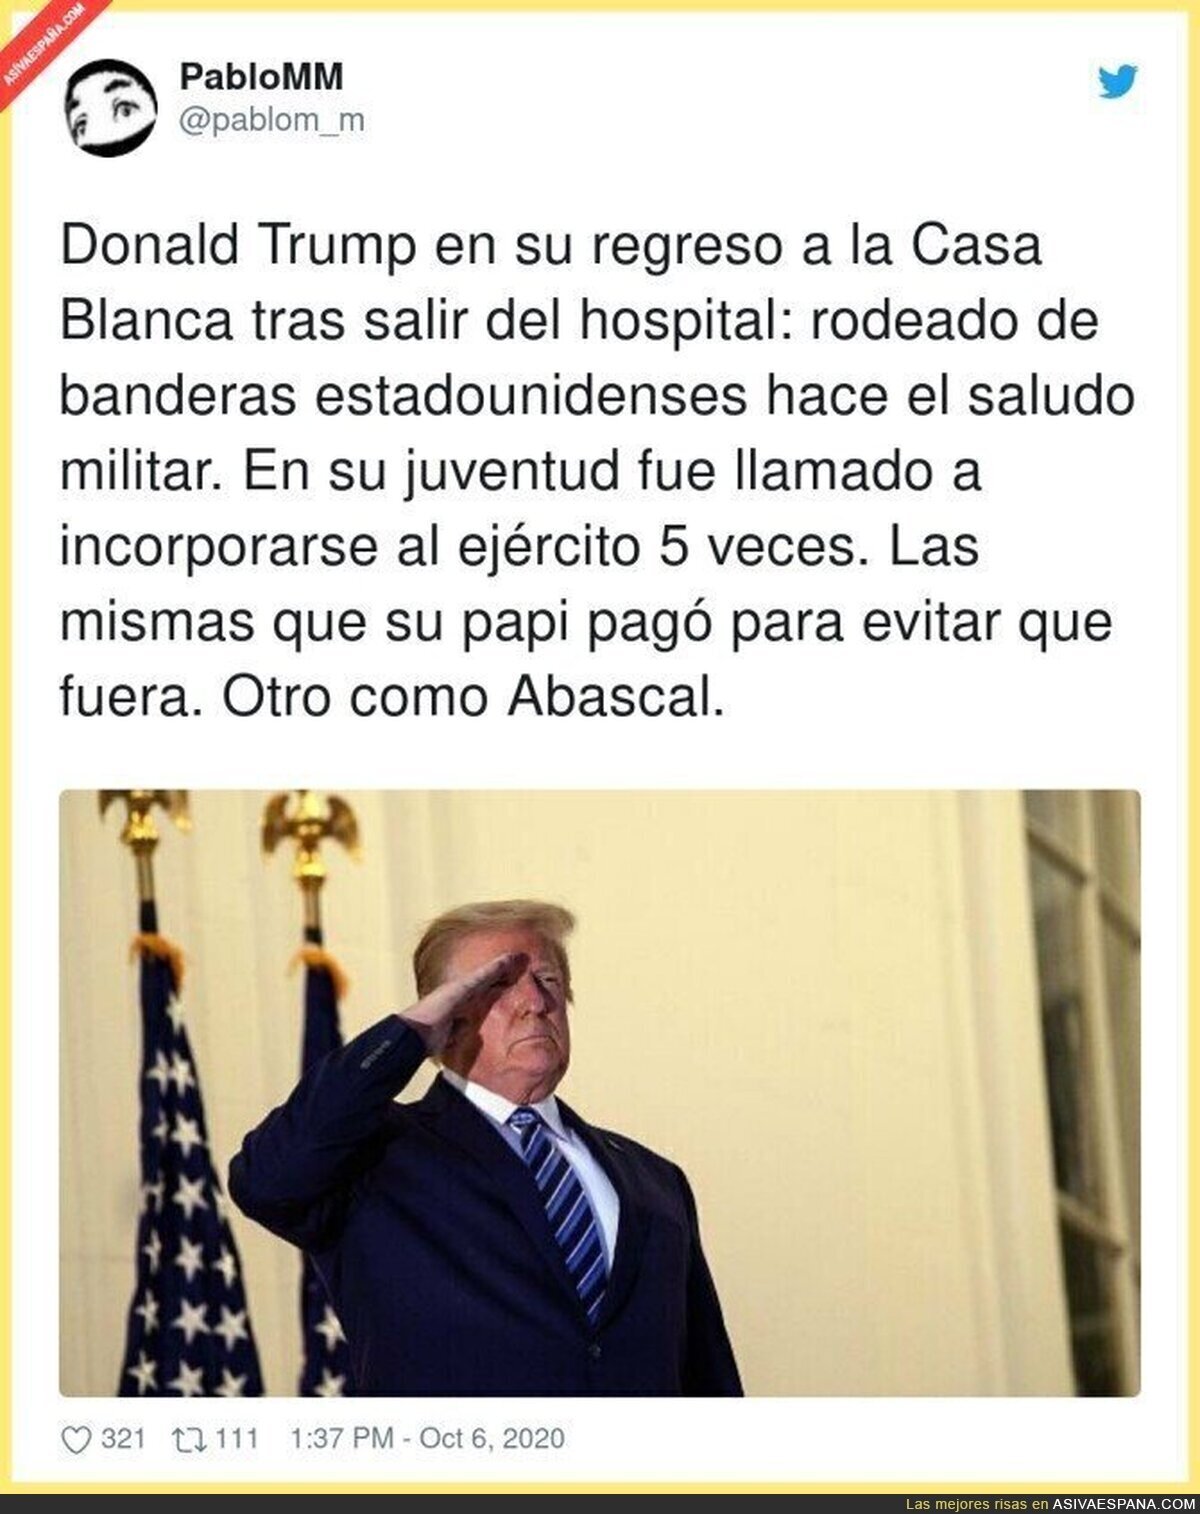 Donald Trump y Santiago Abascal son tal para cual